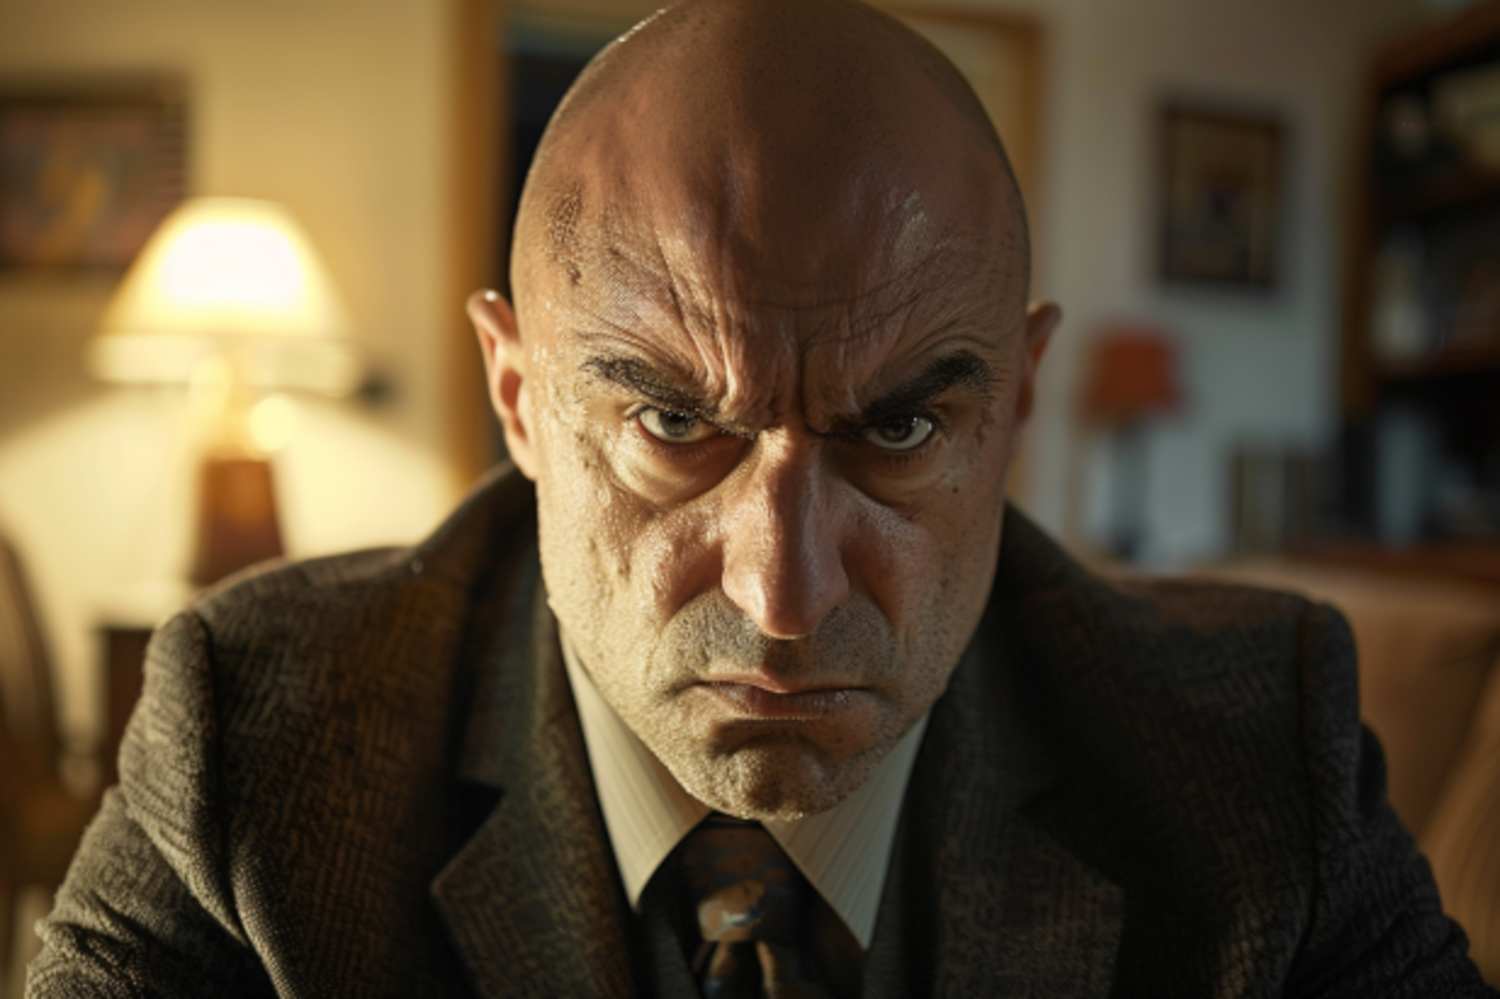 An angry bald man | Source: Midjourney